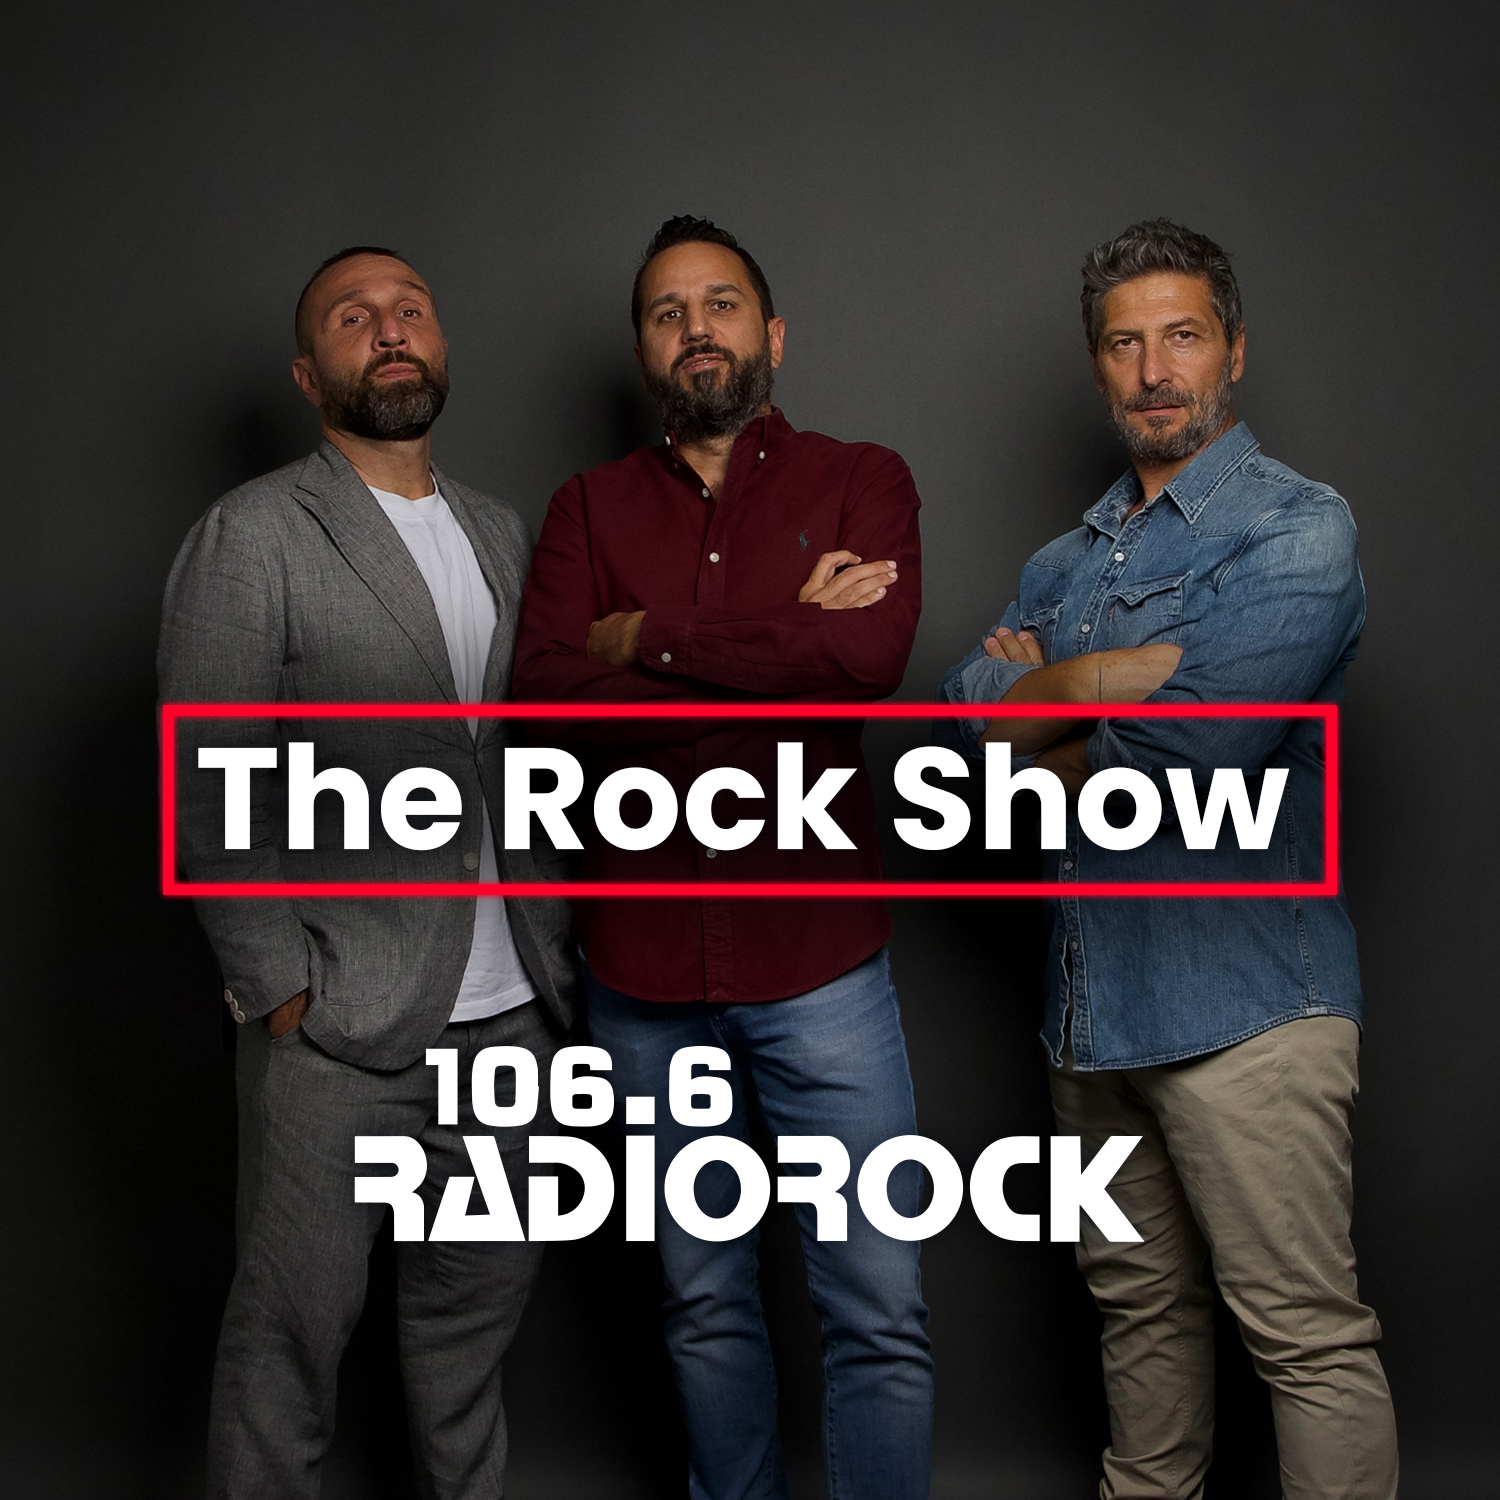 The Rock Show - S07E088: Morire ascoltando il 'The Rock Show' (10-01-24)